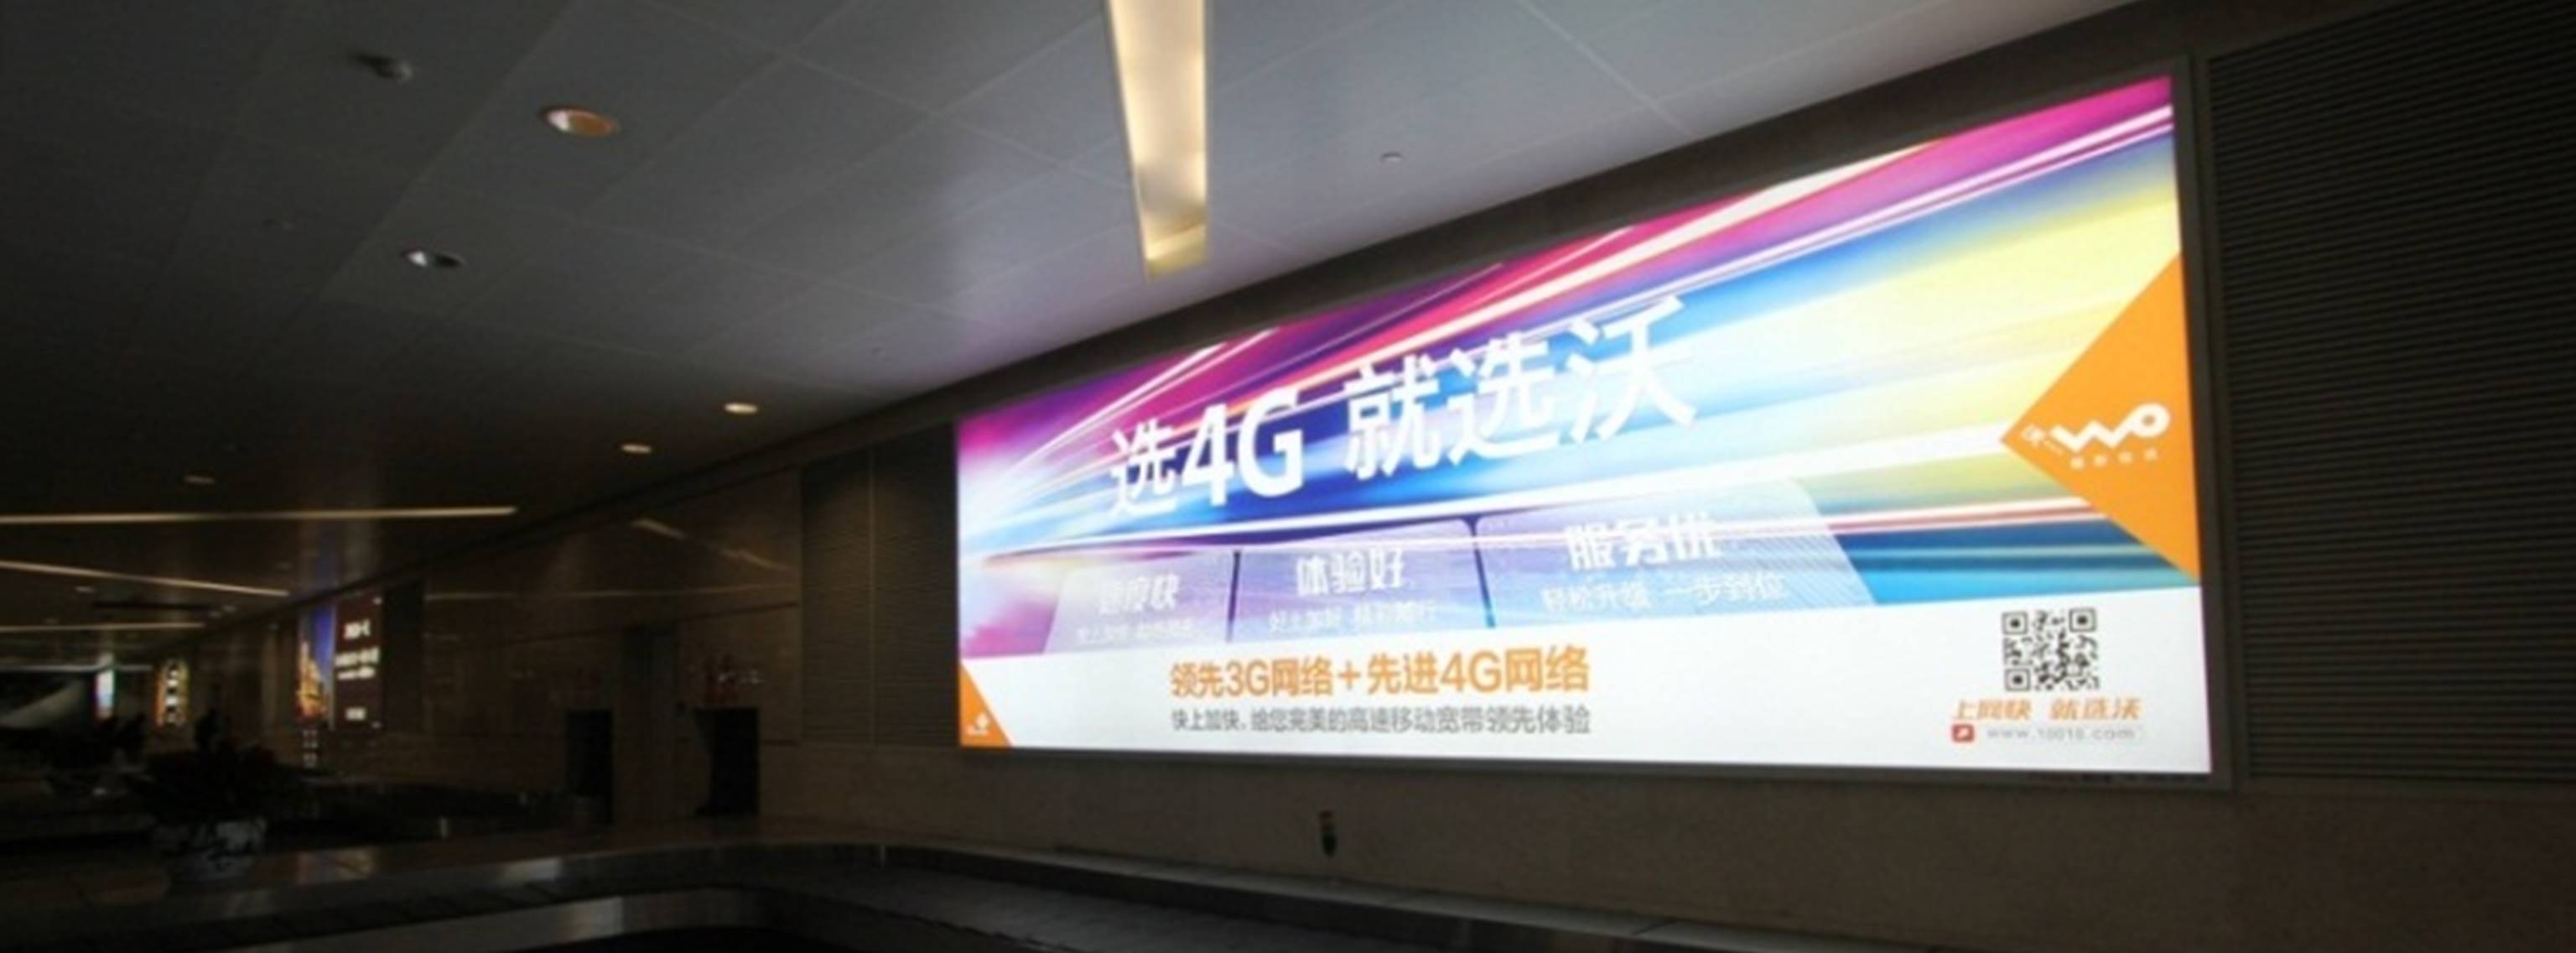 杭州萧山机场广告-T3行李转盘灯箱DB80